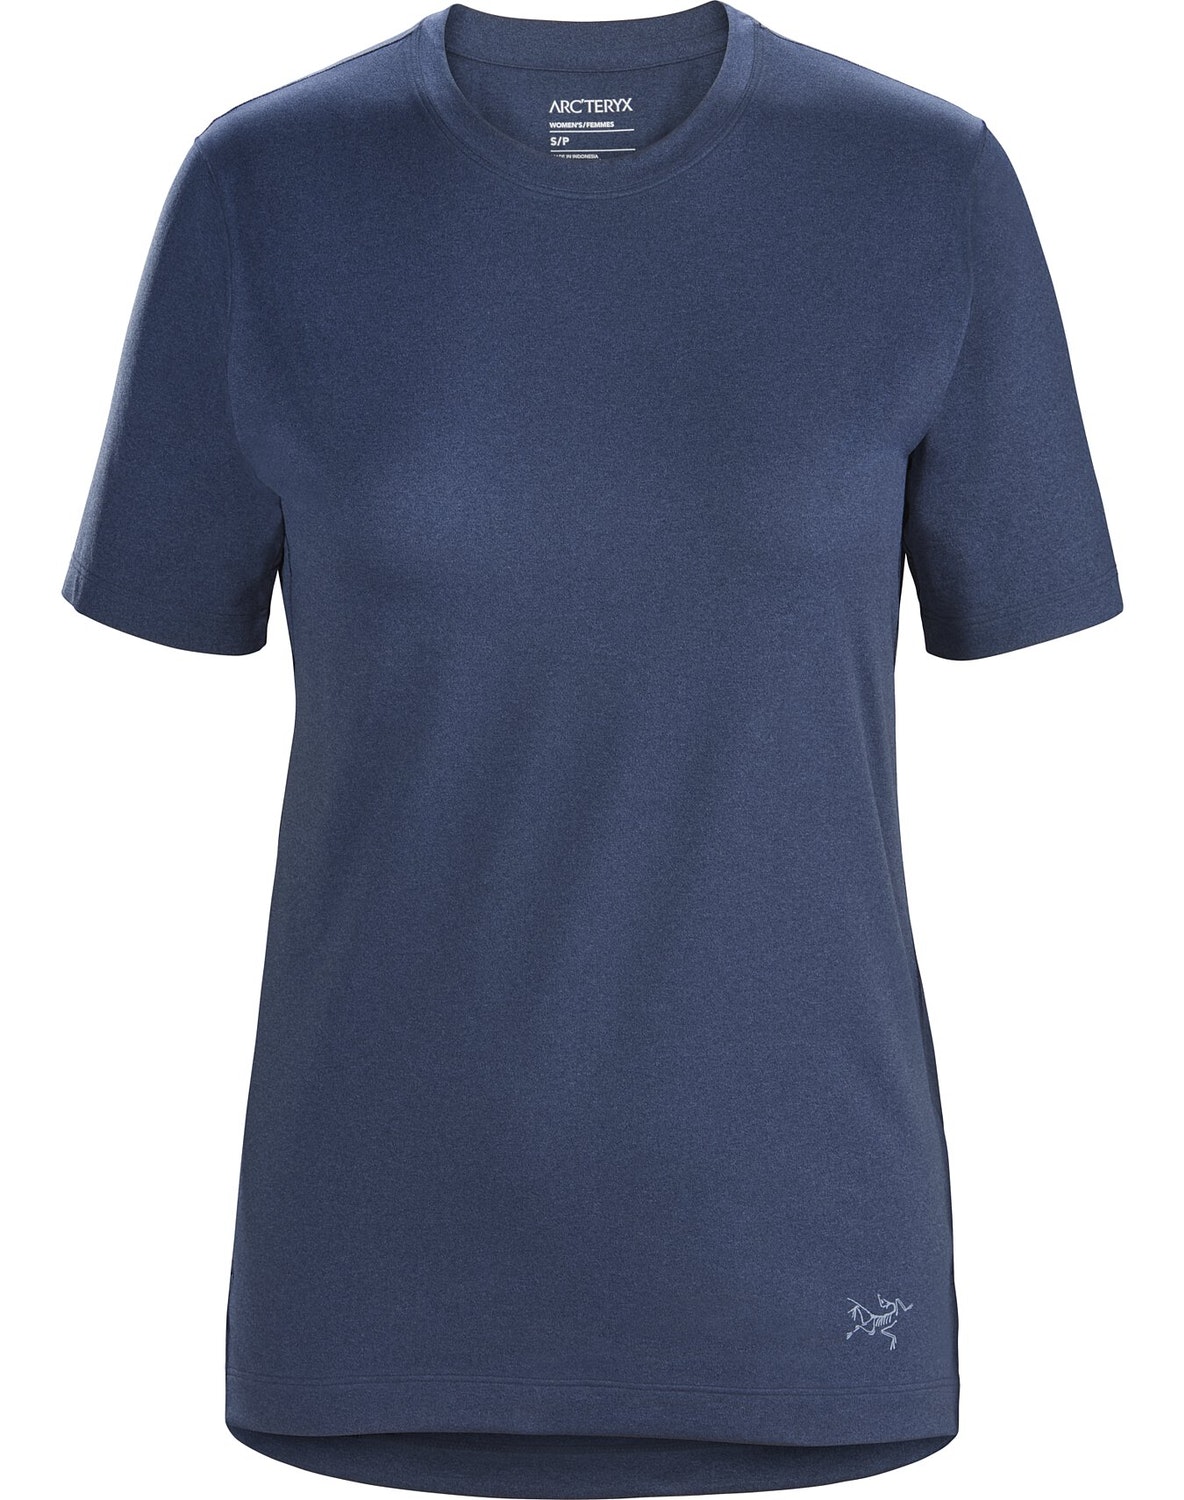 T-shirt Arc'teryx Remige Donna Blu - IT-367617